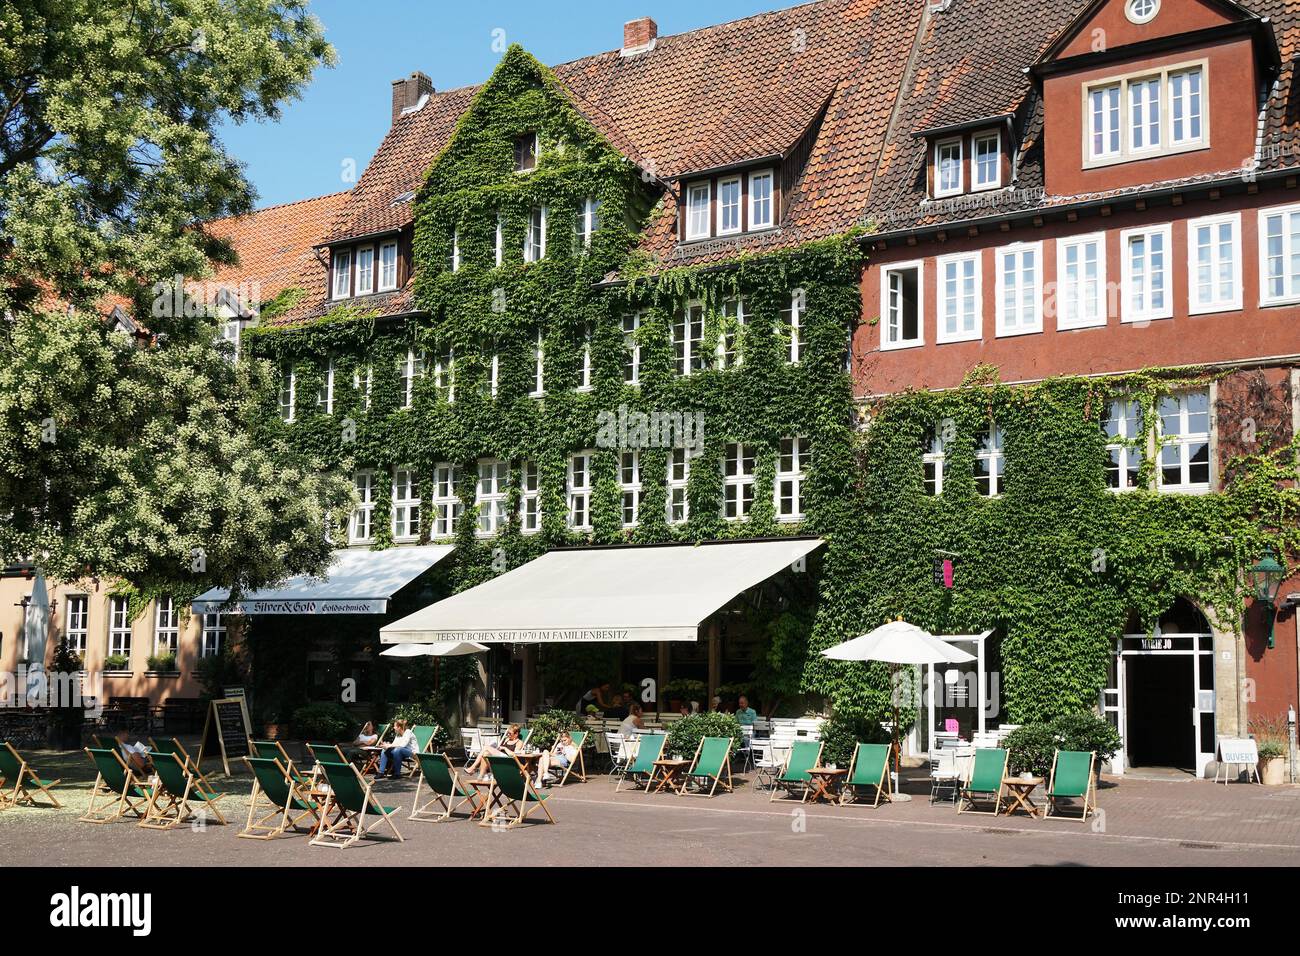 Hannover, Germania - 23 luglio 2018: Piazza Ballhof con la famosa strada caffè Teestuebchen (che significa piccola sala da tè) nella storica città vecchia di Hannover Foto Stock